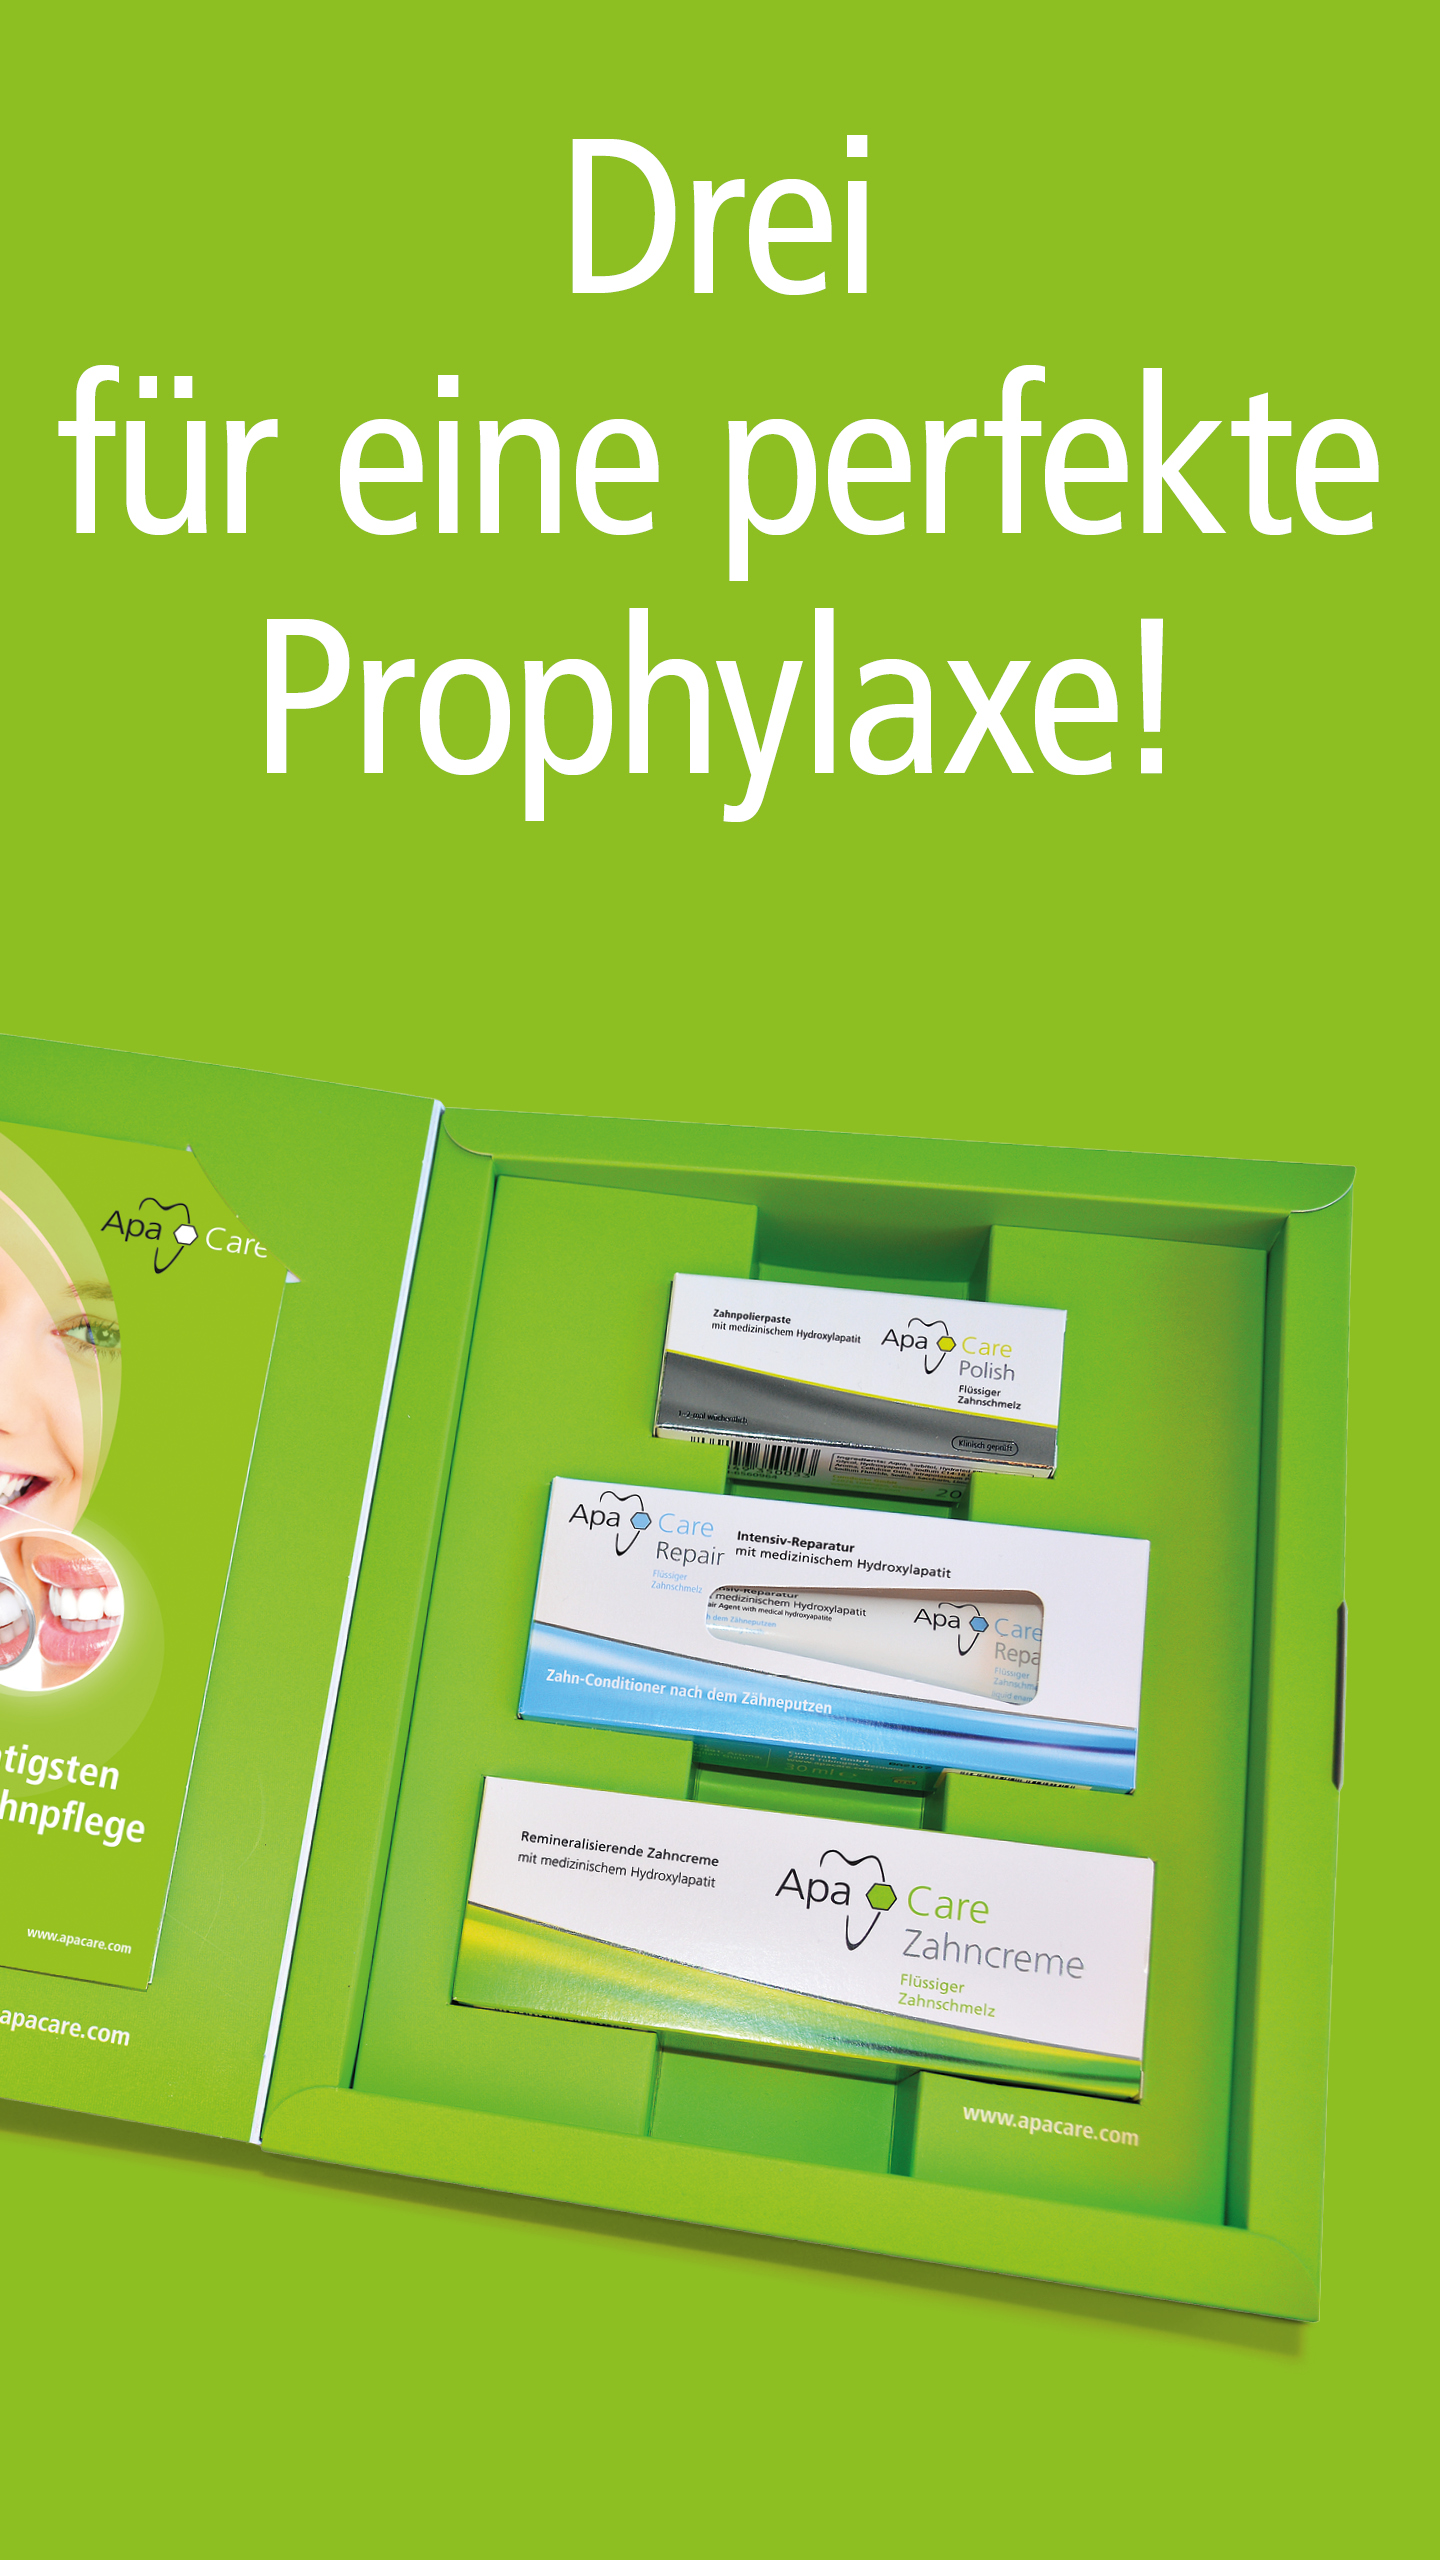 Prophylaxis set